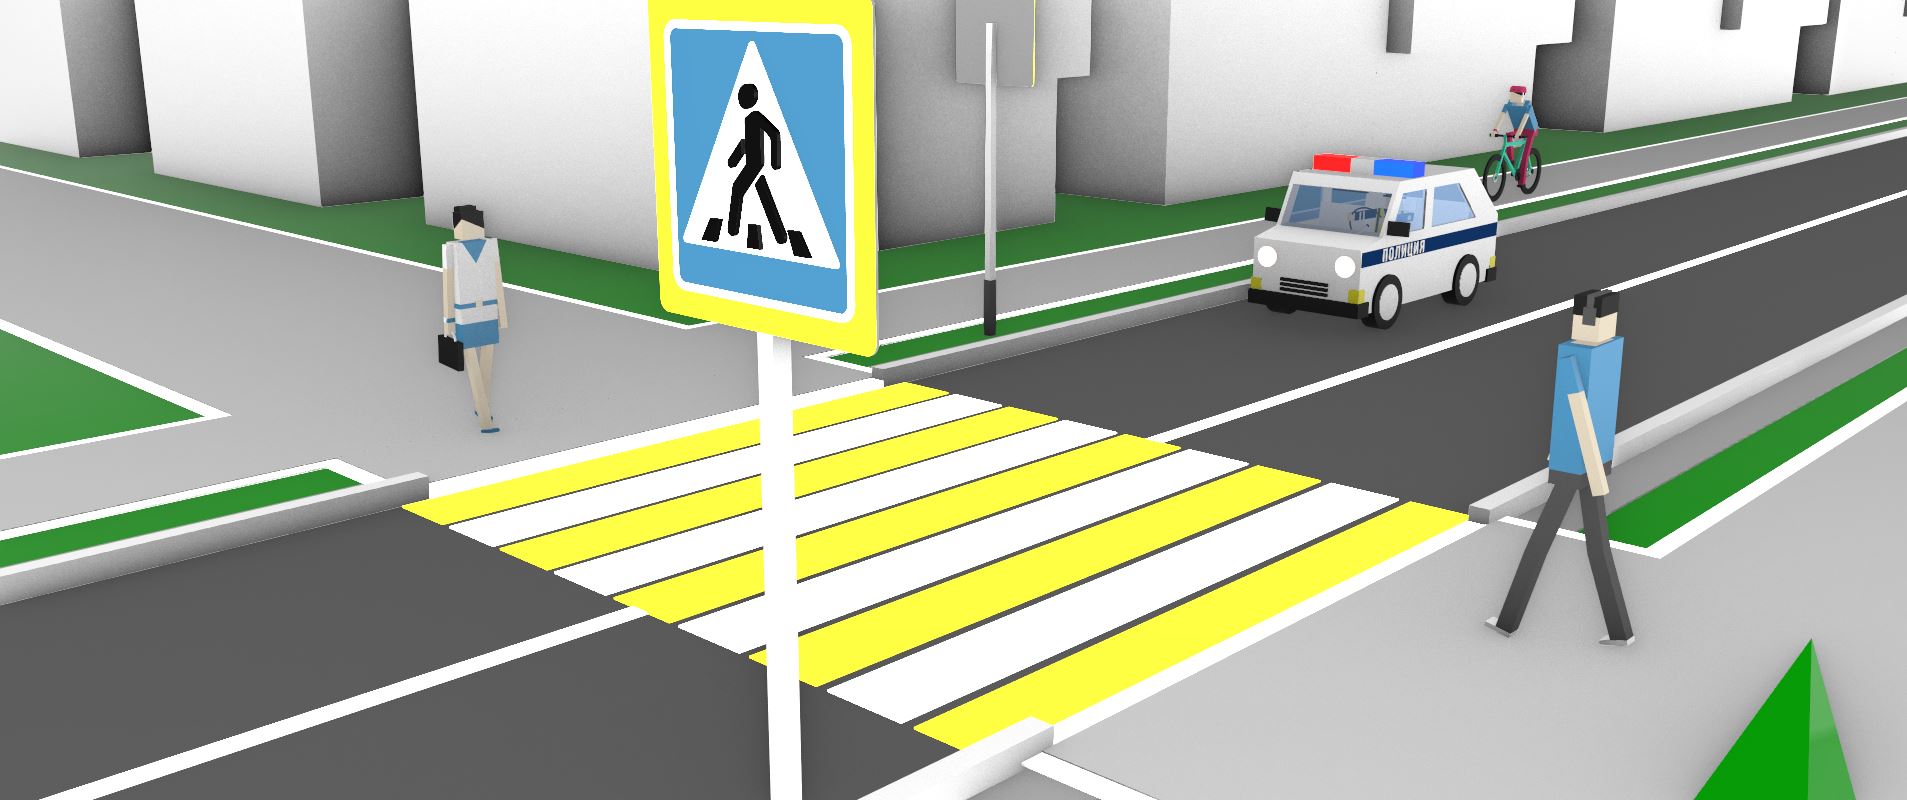 На каком перекрестке, как и где устанавливается модульный пешеходный переход? Как обгонять других людей на дороге